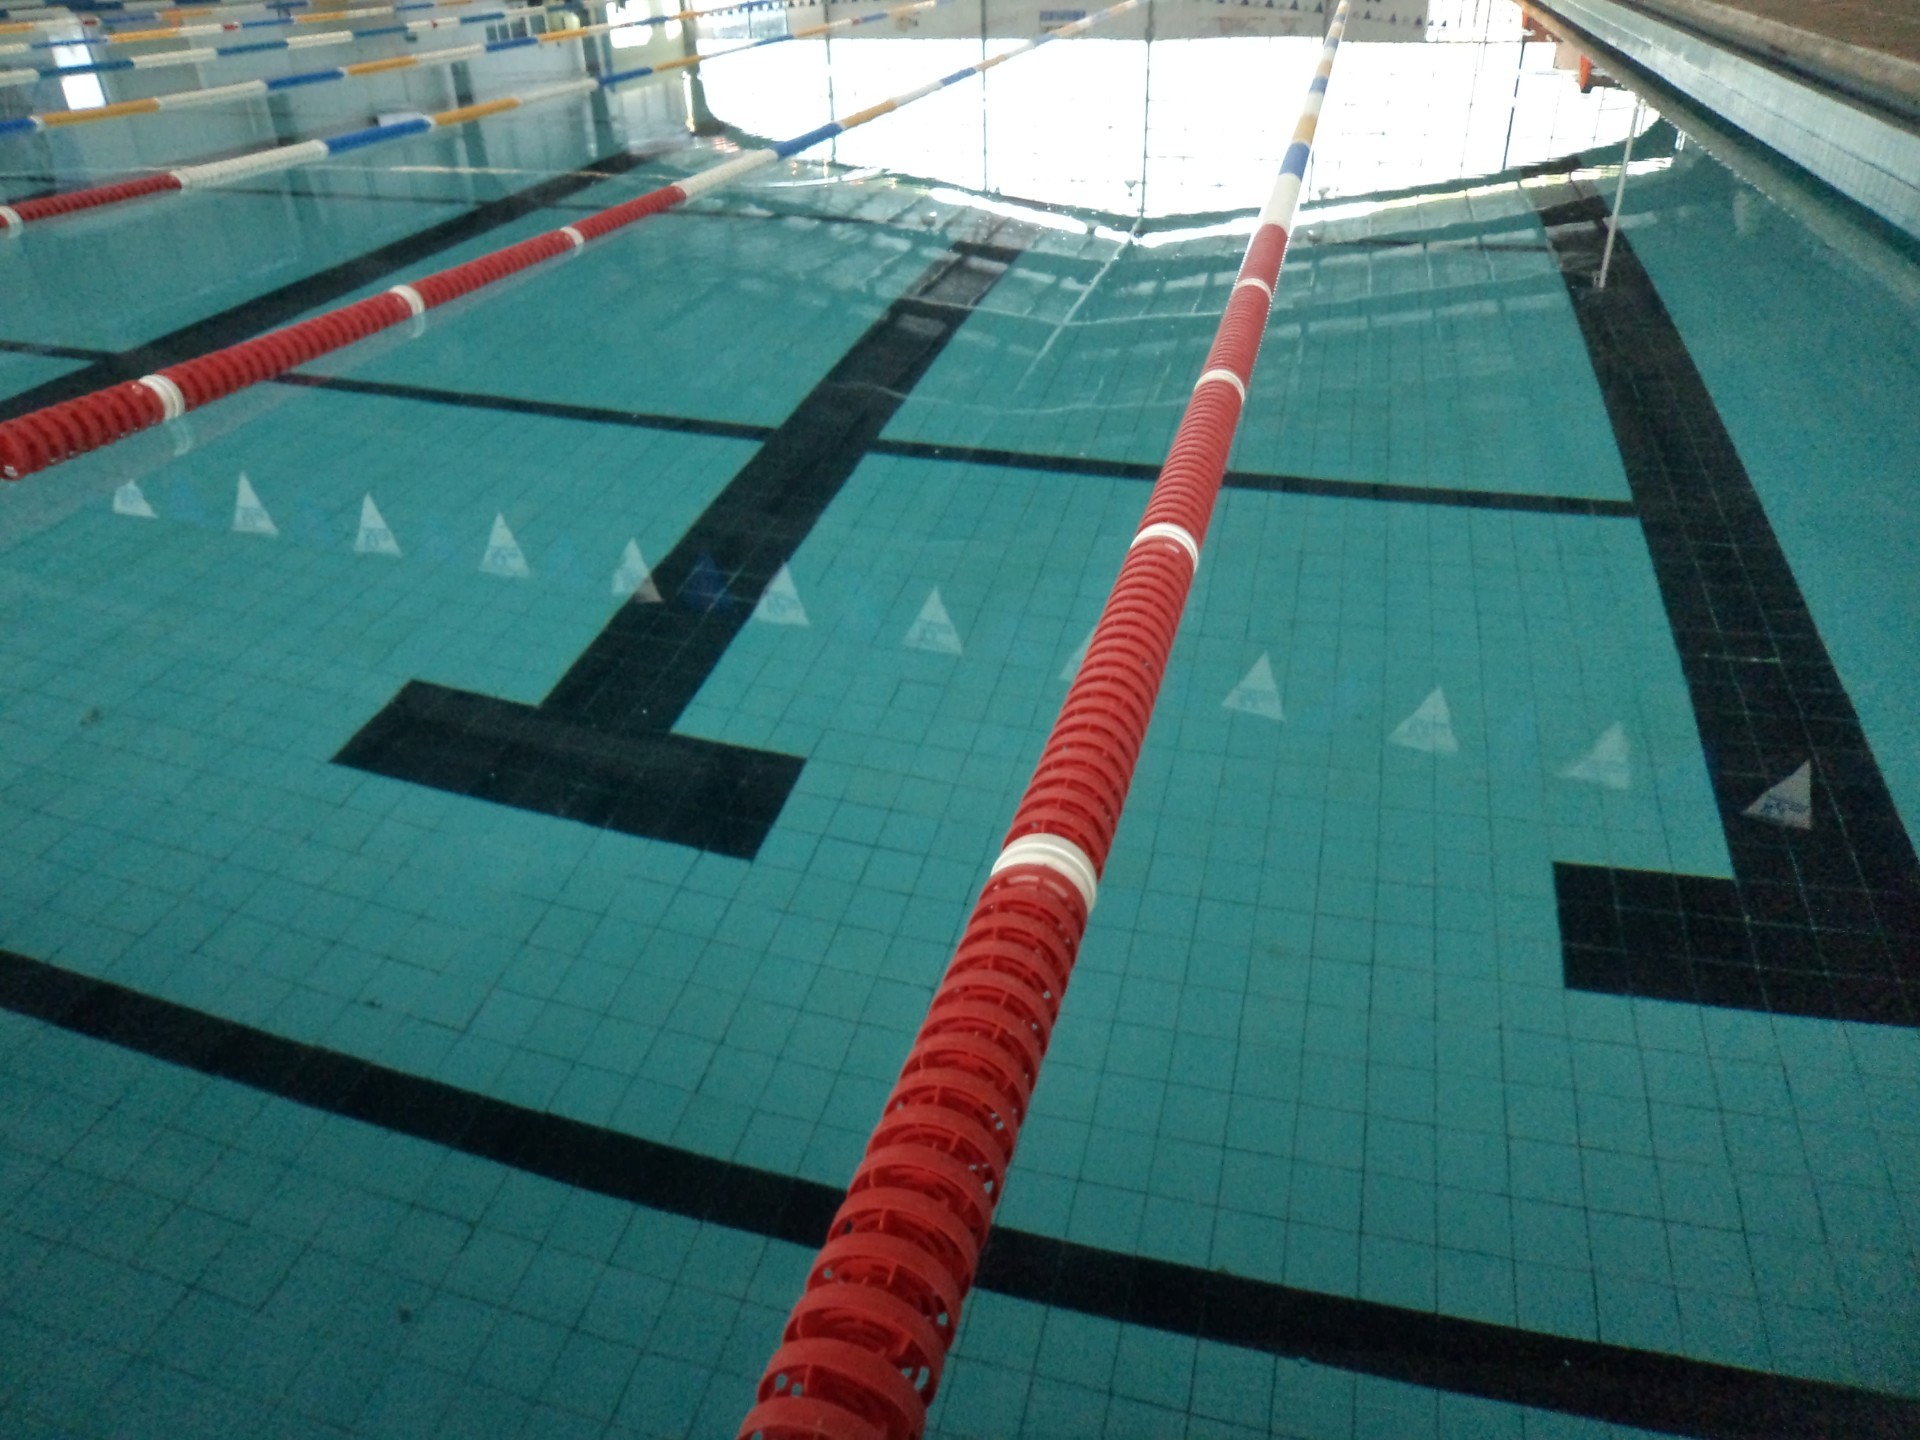 1920x1440 alberca olympics swimming pool wallpaper free full hd